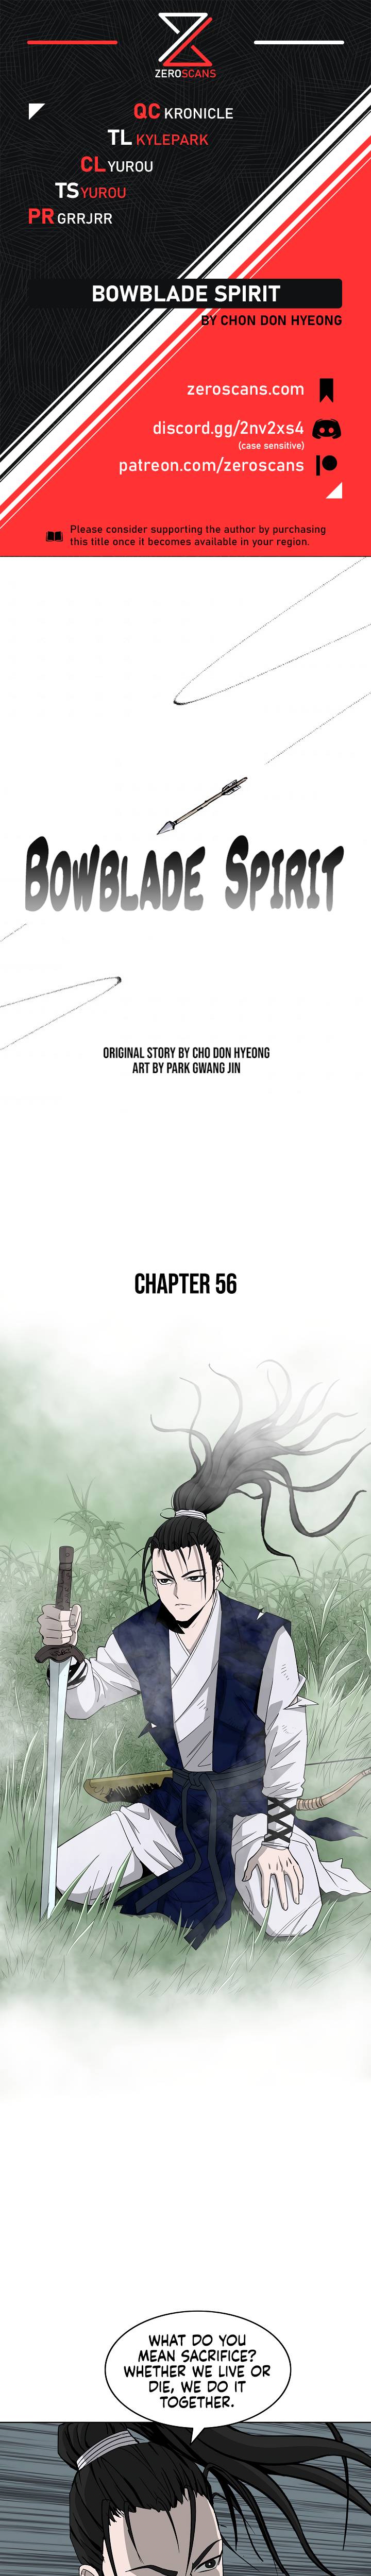 Bowblade Spirit - Chapter 56 Page 1